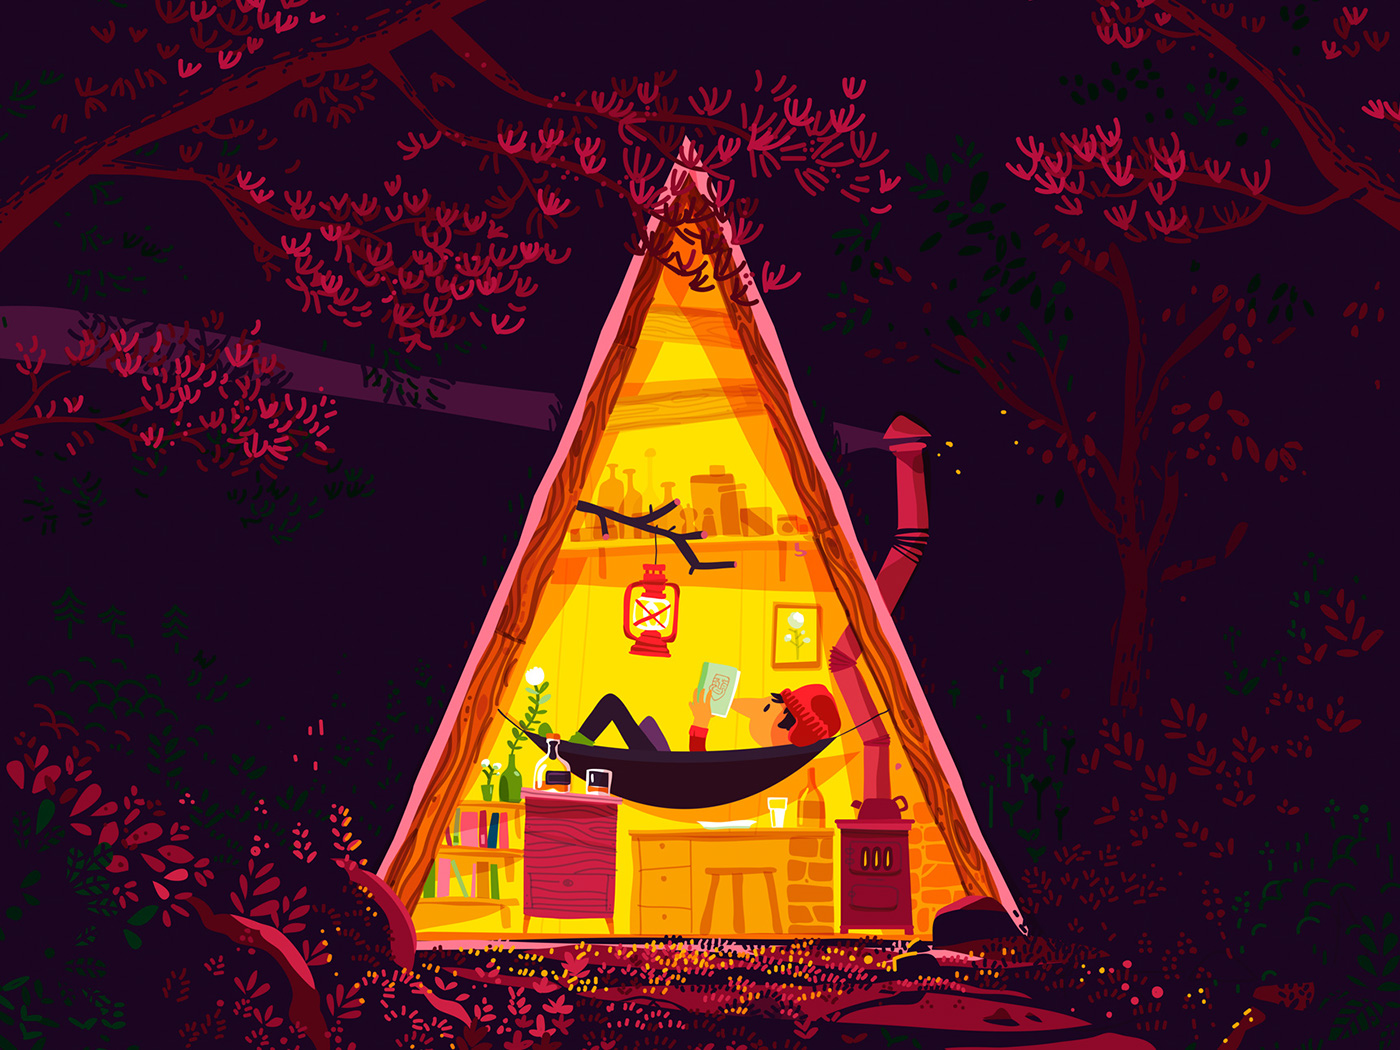 woods green hut purple yellow outdoors A-Frame camping explorer adventure light